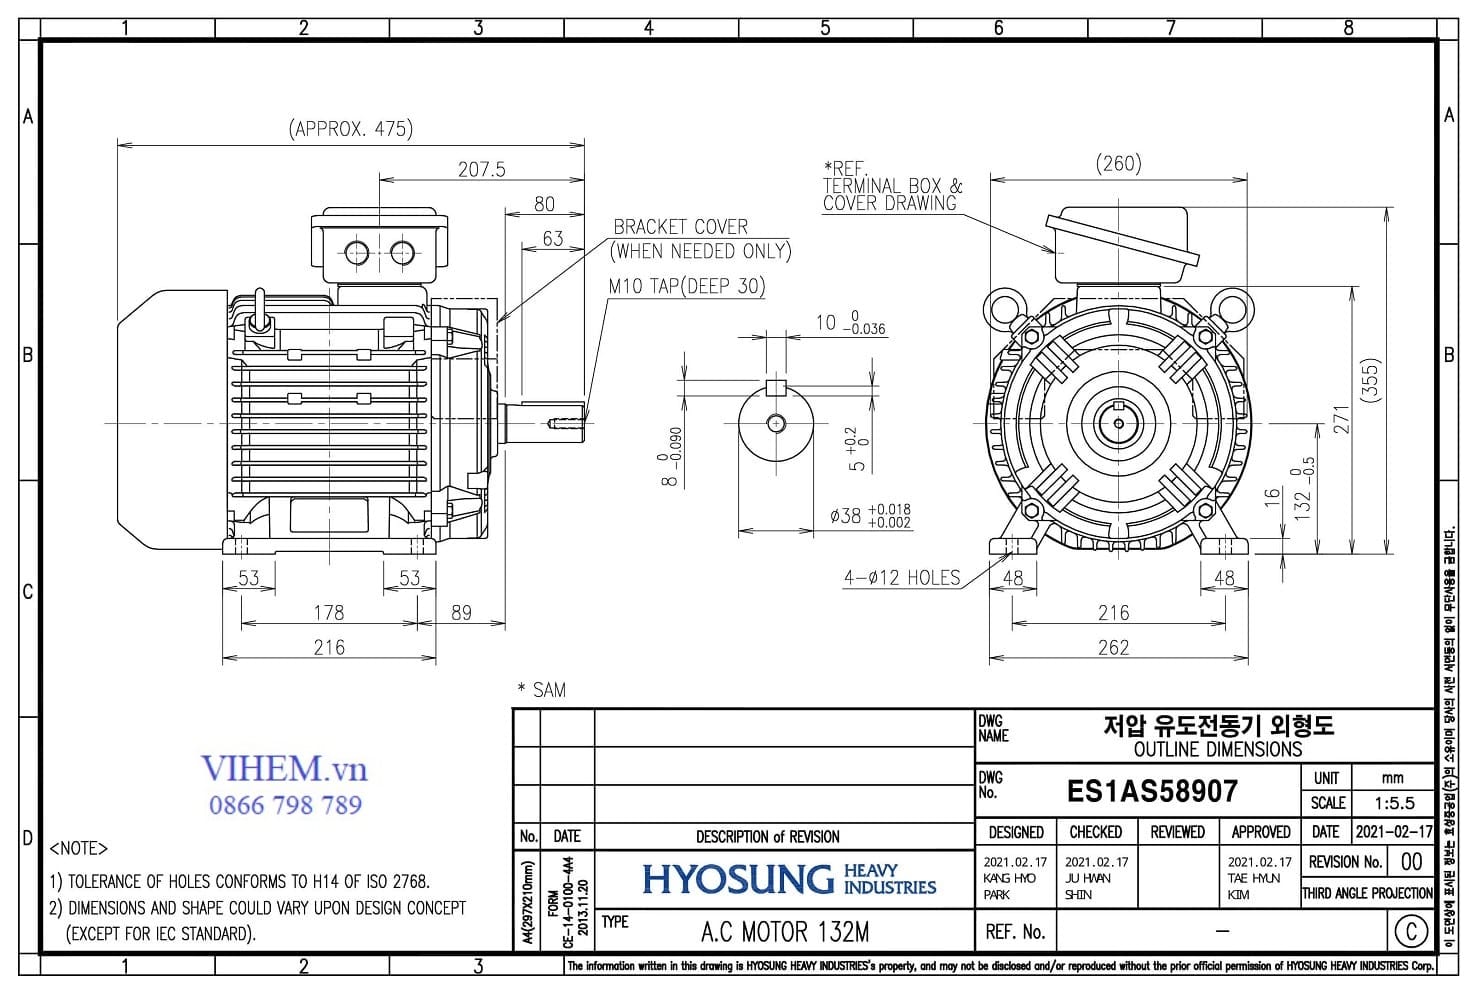 thông số kỹ thuật & kích thước lắp đặt Motor Hyosung 4kW - 6P (1000 rpm)